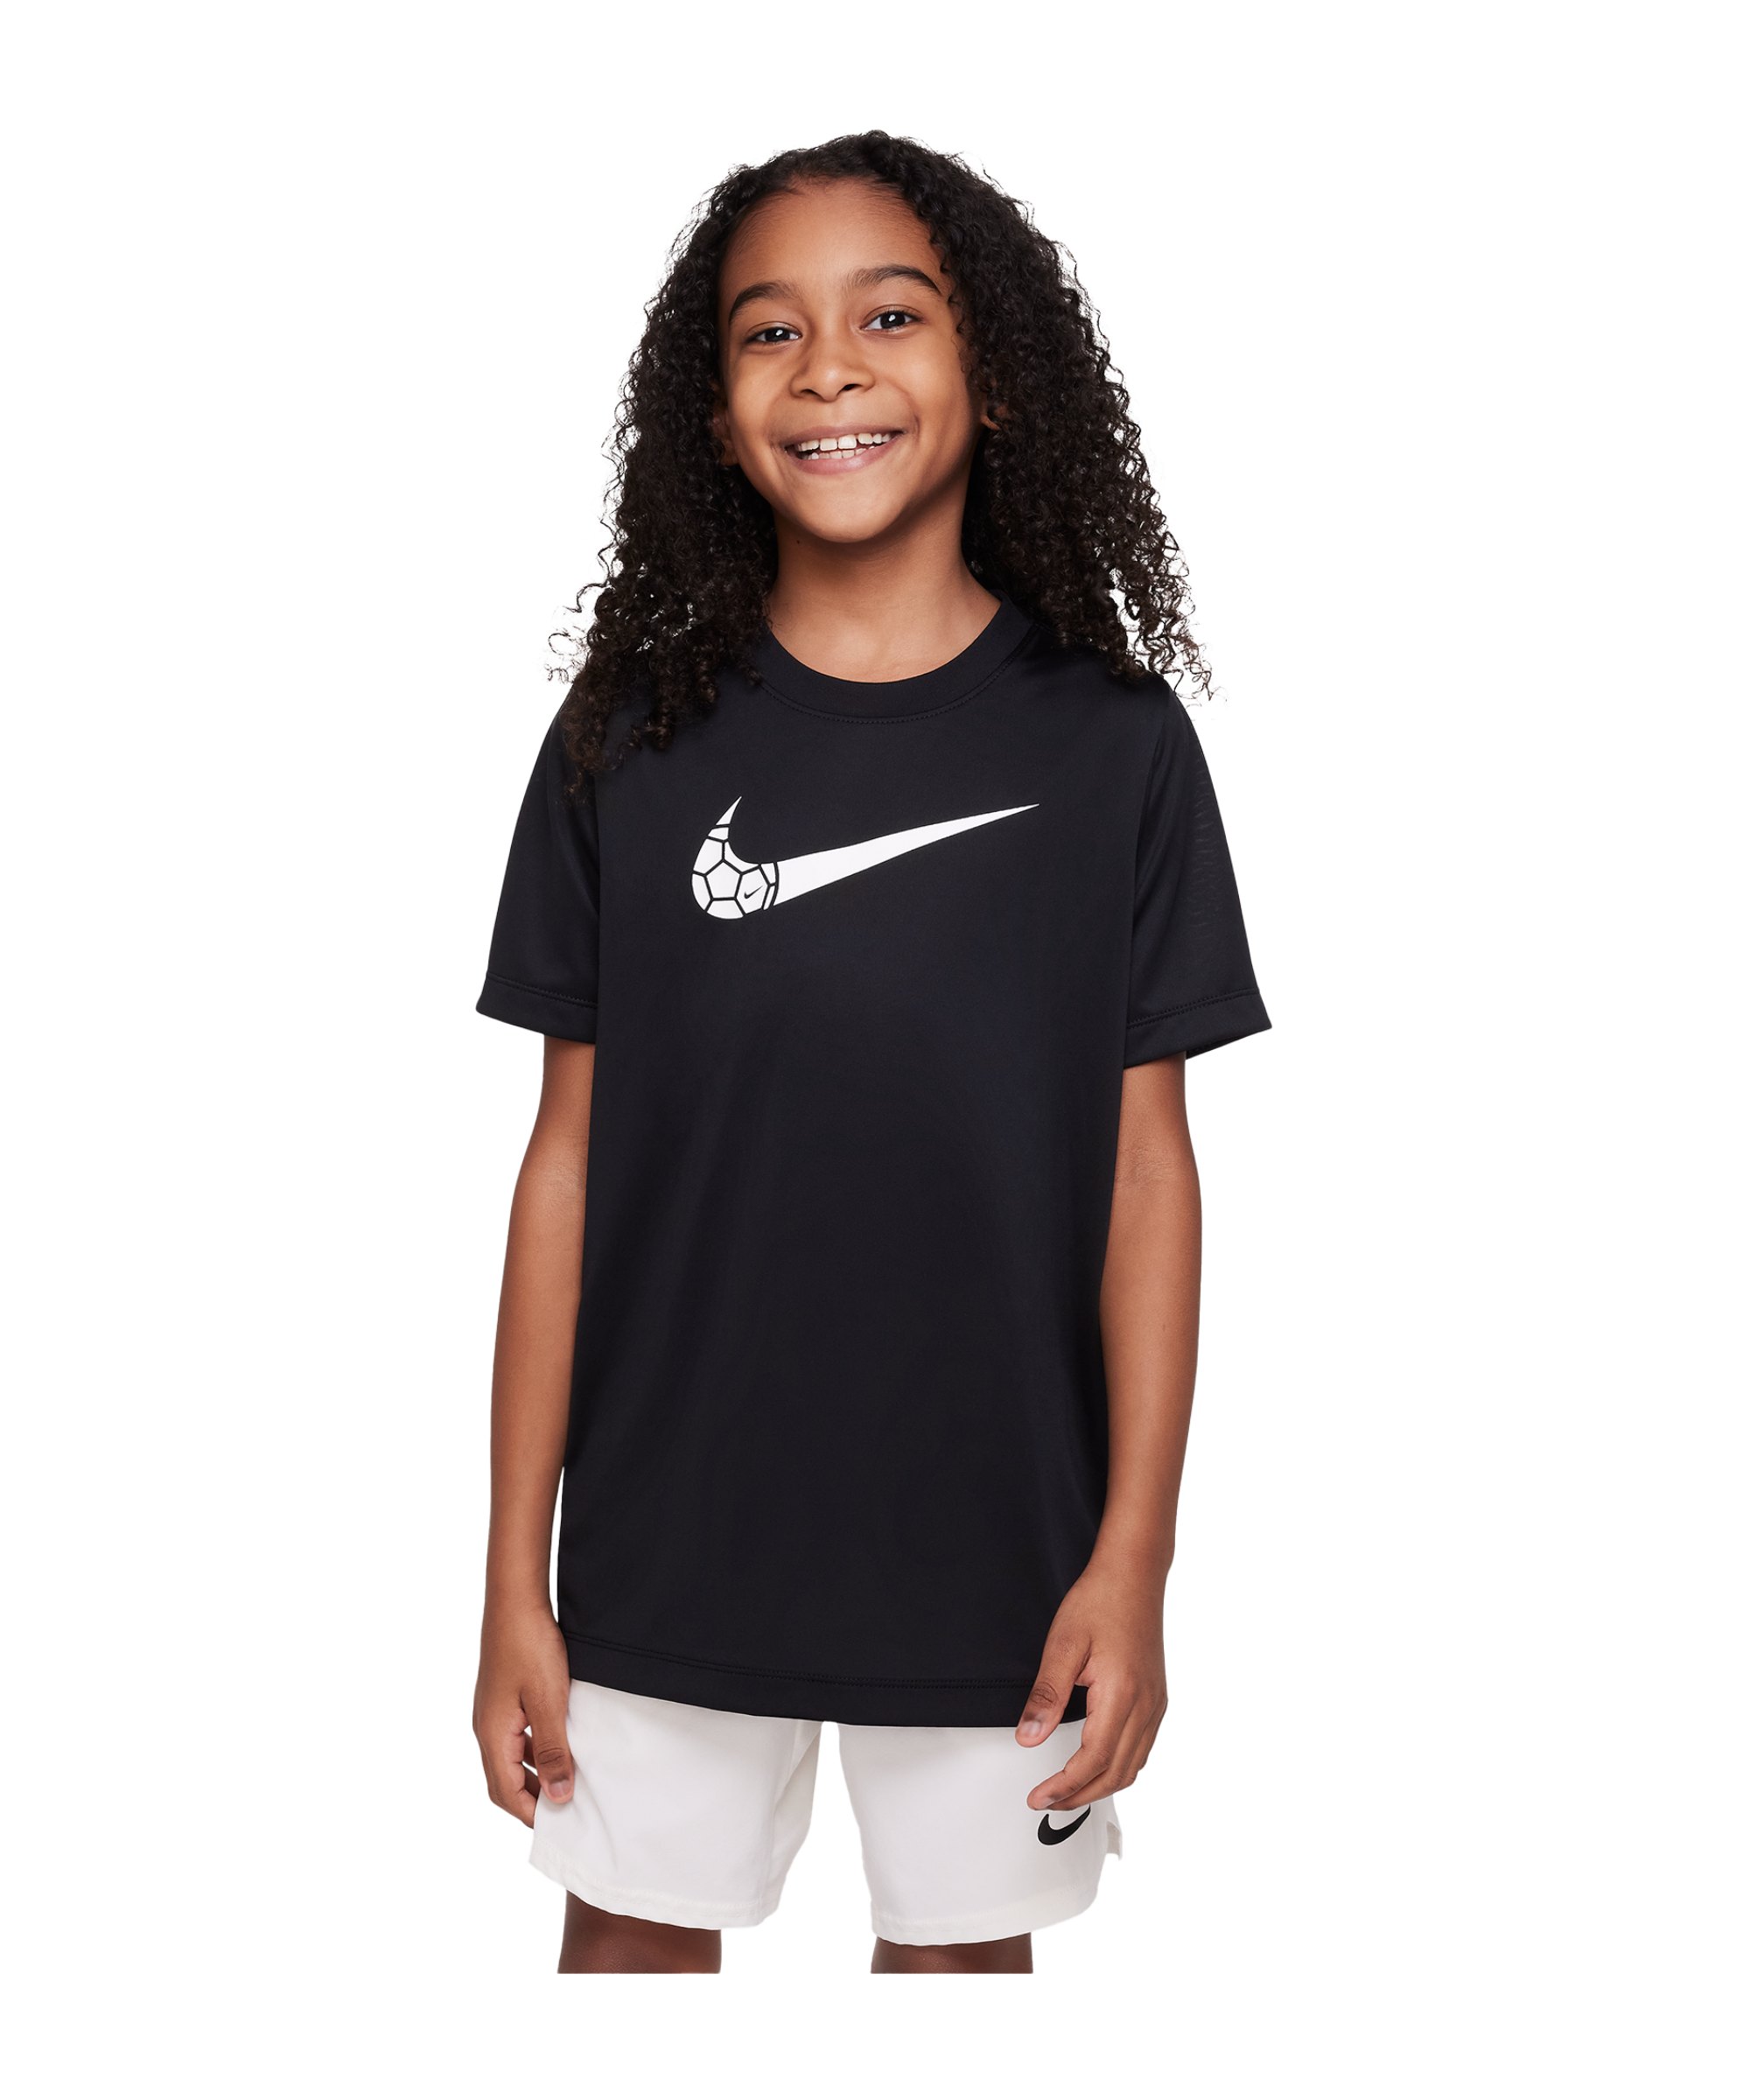 Nike Training T-Shirt Kids Schwarz F010 - schwarz